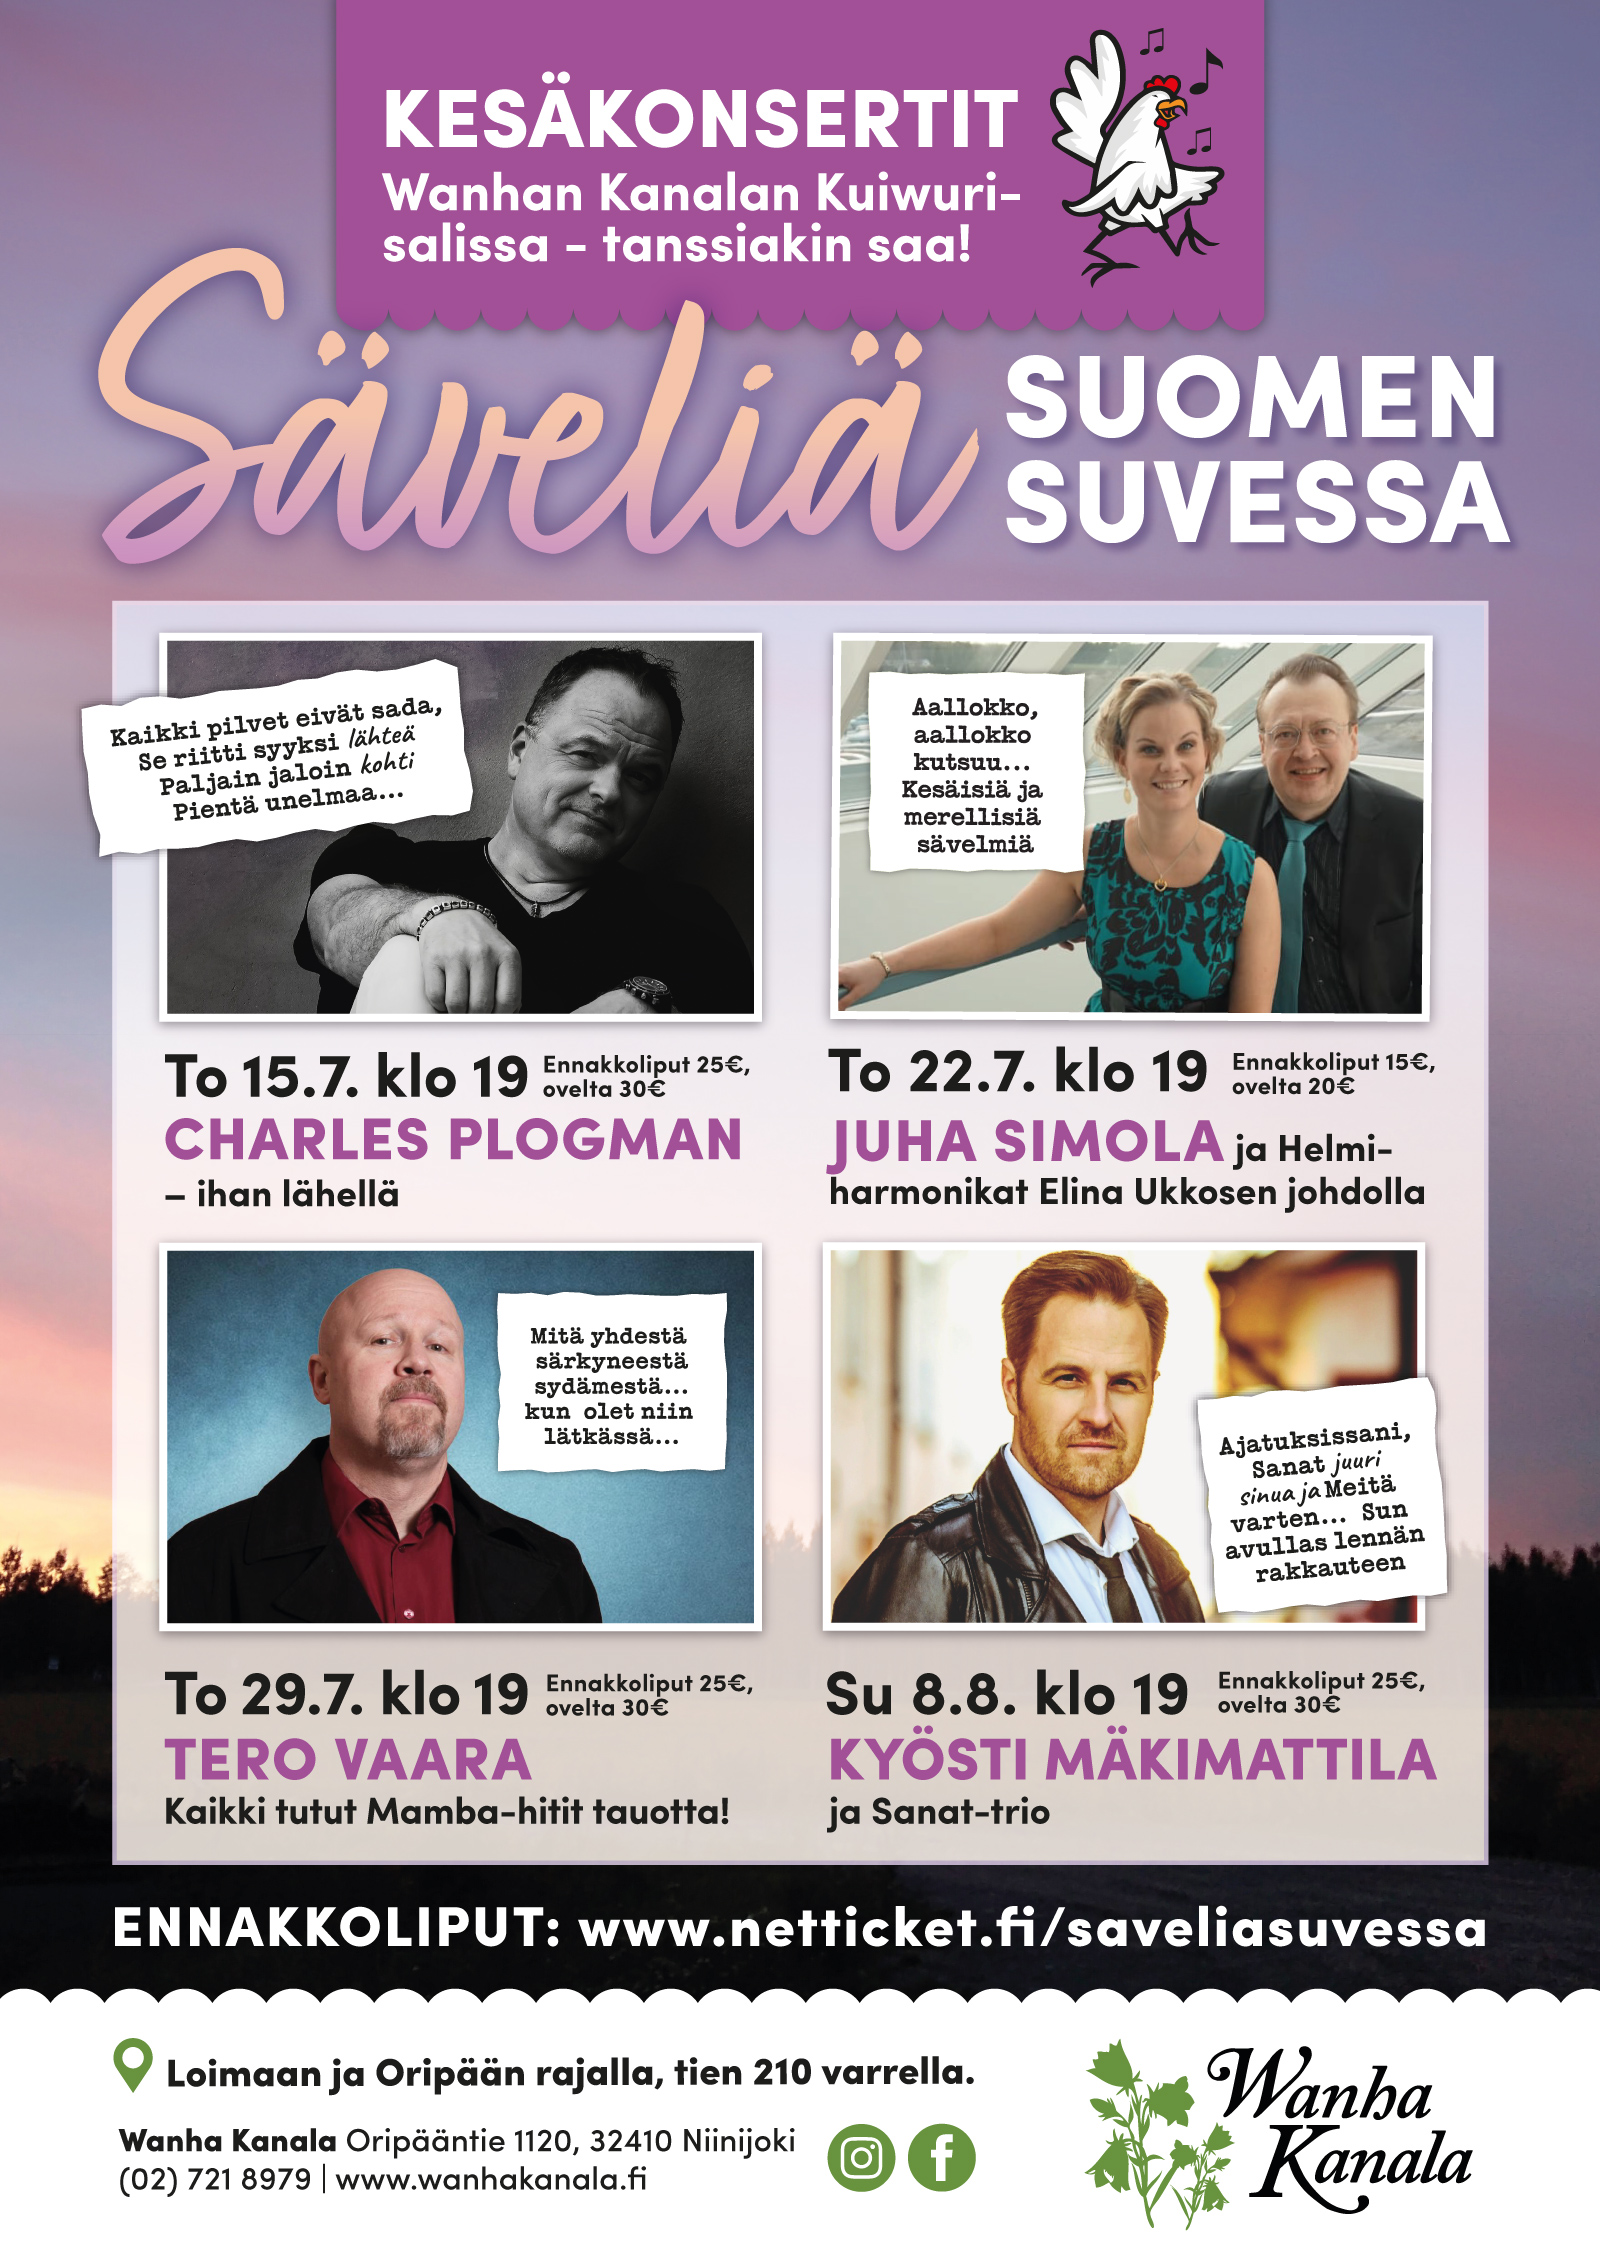 Tero Vaara - kesäkonsertti Säveliä Suomen suvessa, nyt vuorossa kaikki Mamba hitit tauotta